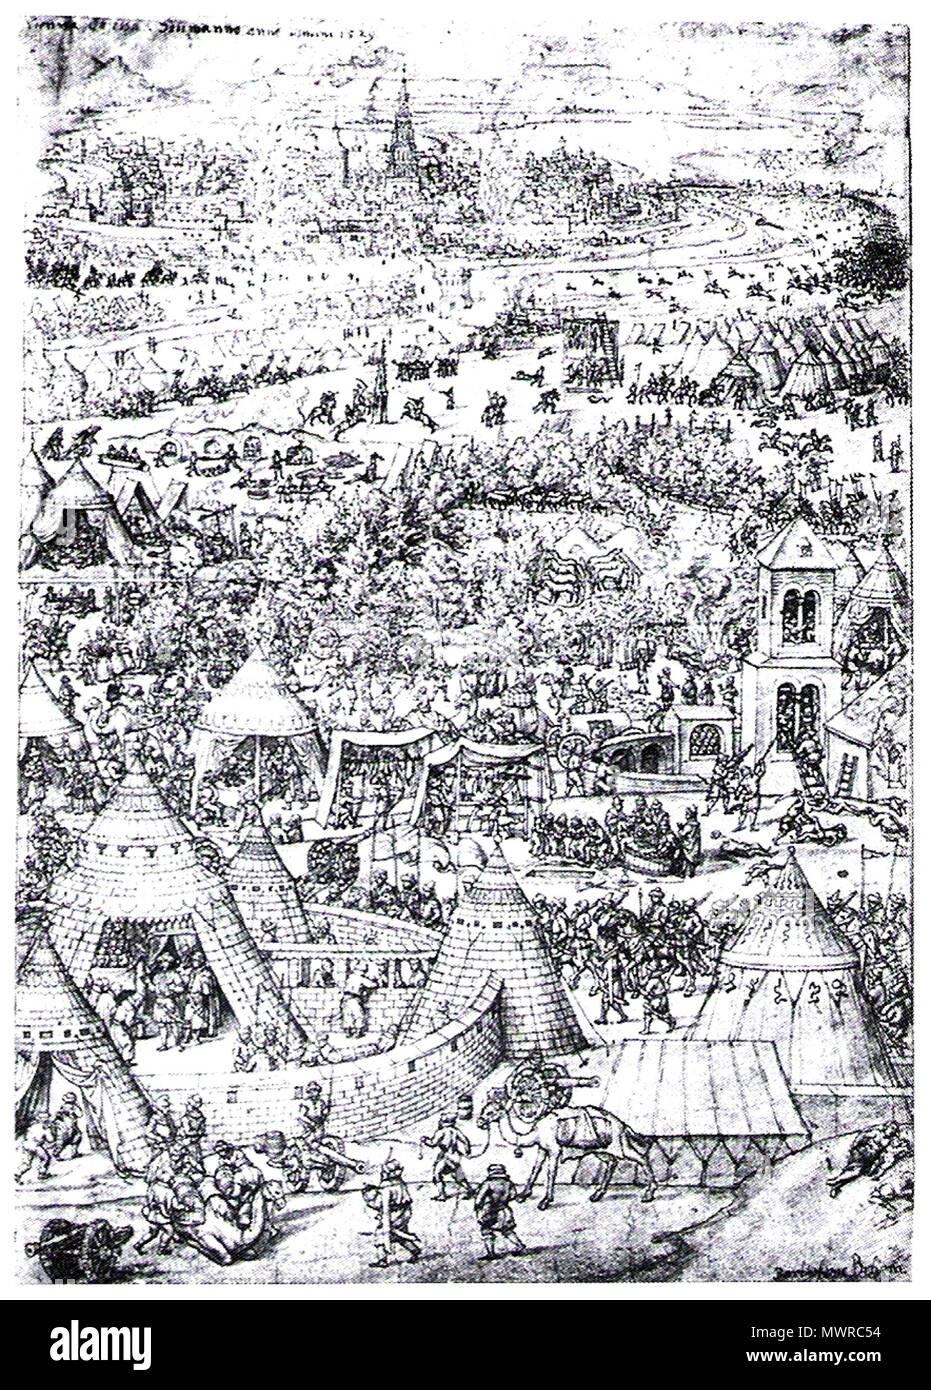 . English: en:Engraving of the Siege of Vienna (1529) Deutsch: Erste Wiener Türkenbelagerung, zeitgenössische Darstellung von Bartholomäus Beham (1502-1540) . Bartholomäus Beham 558 Siegeofvienna-1529 Stock Photo